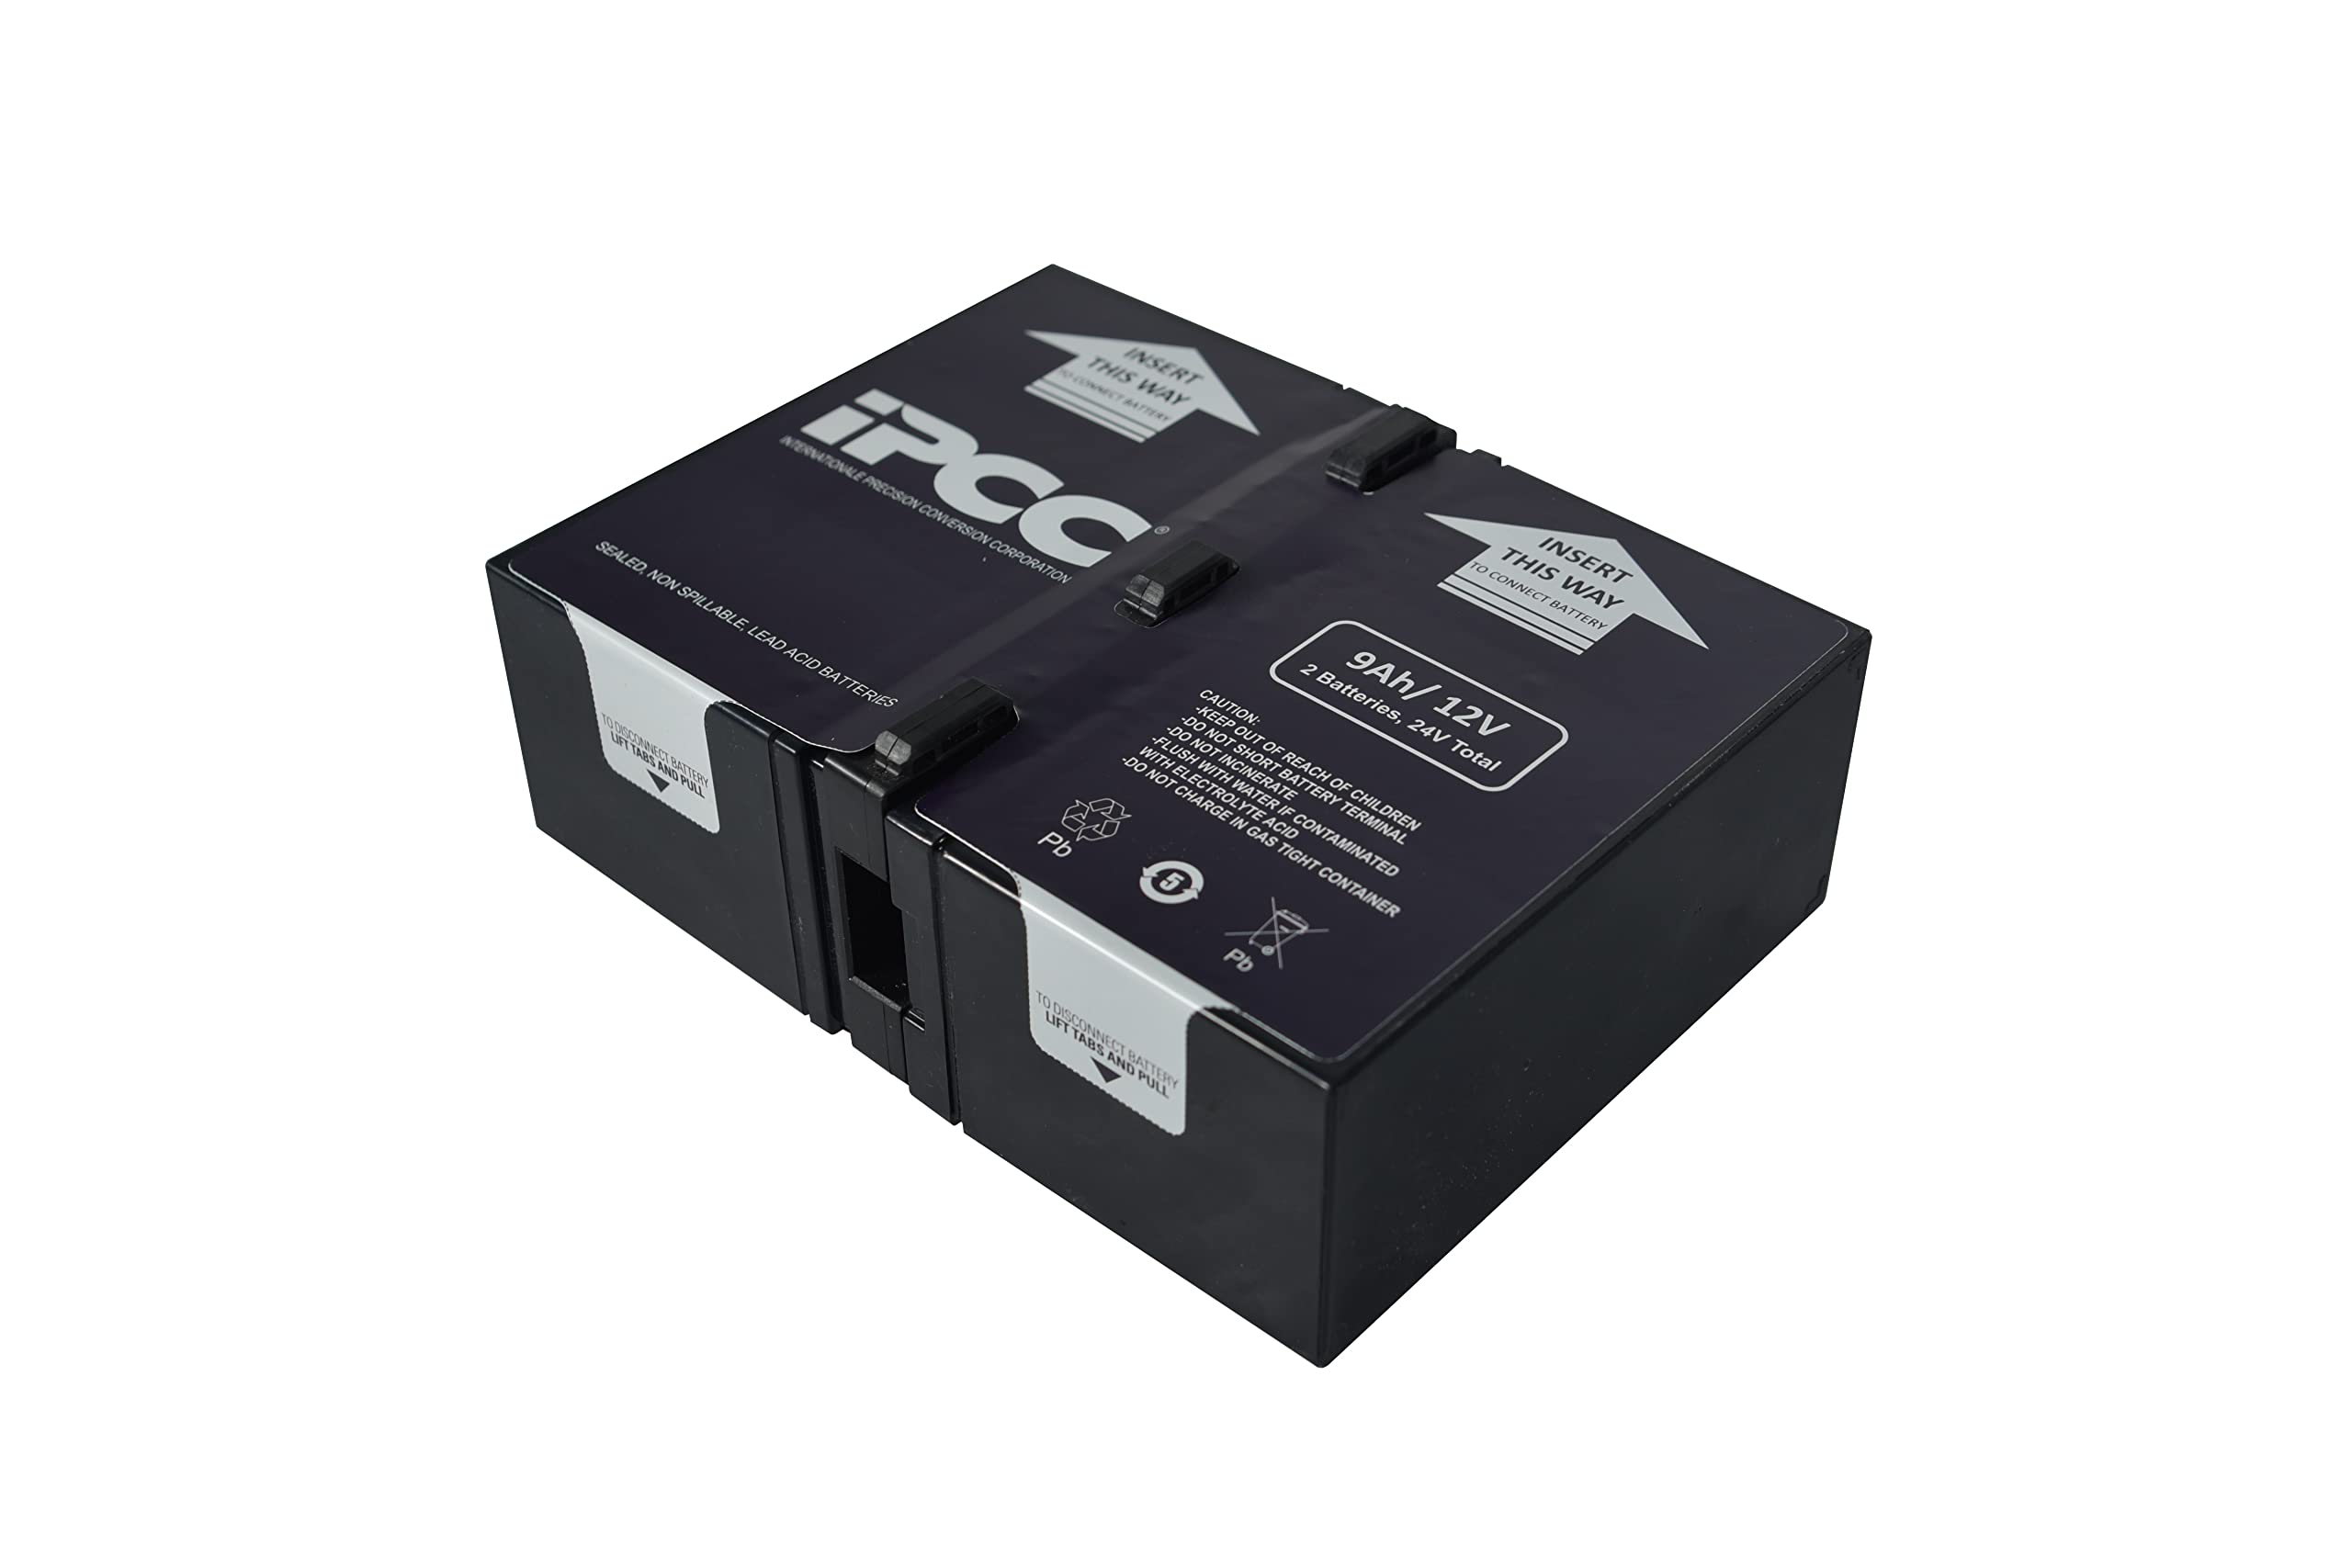 Mua Apcrbc124 24v90 Ah Ups Battery Replacement Cartridge Rbc124 Compatible With Apc 3354